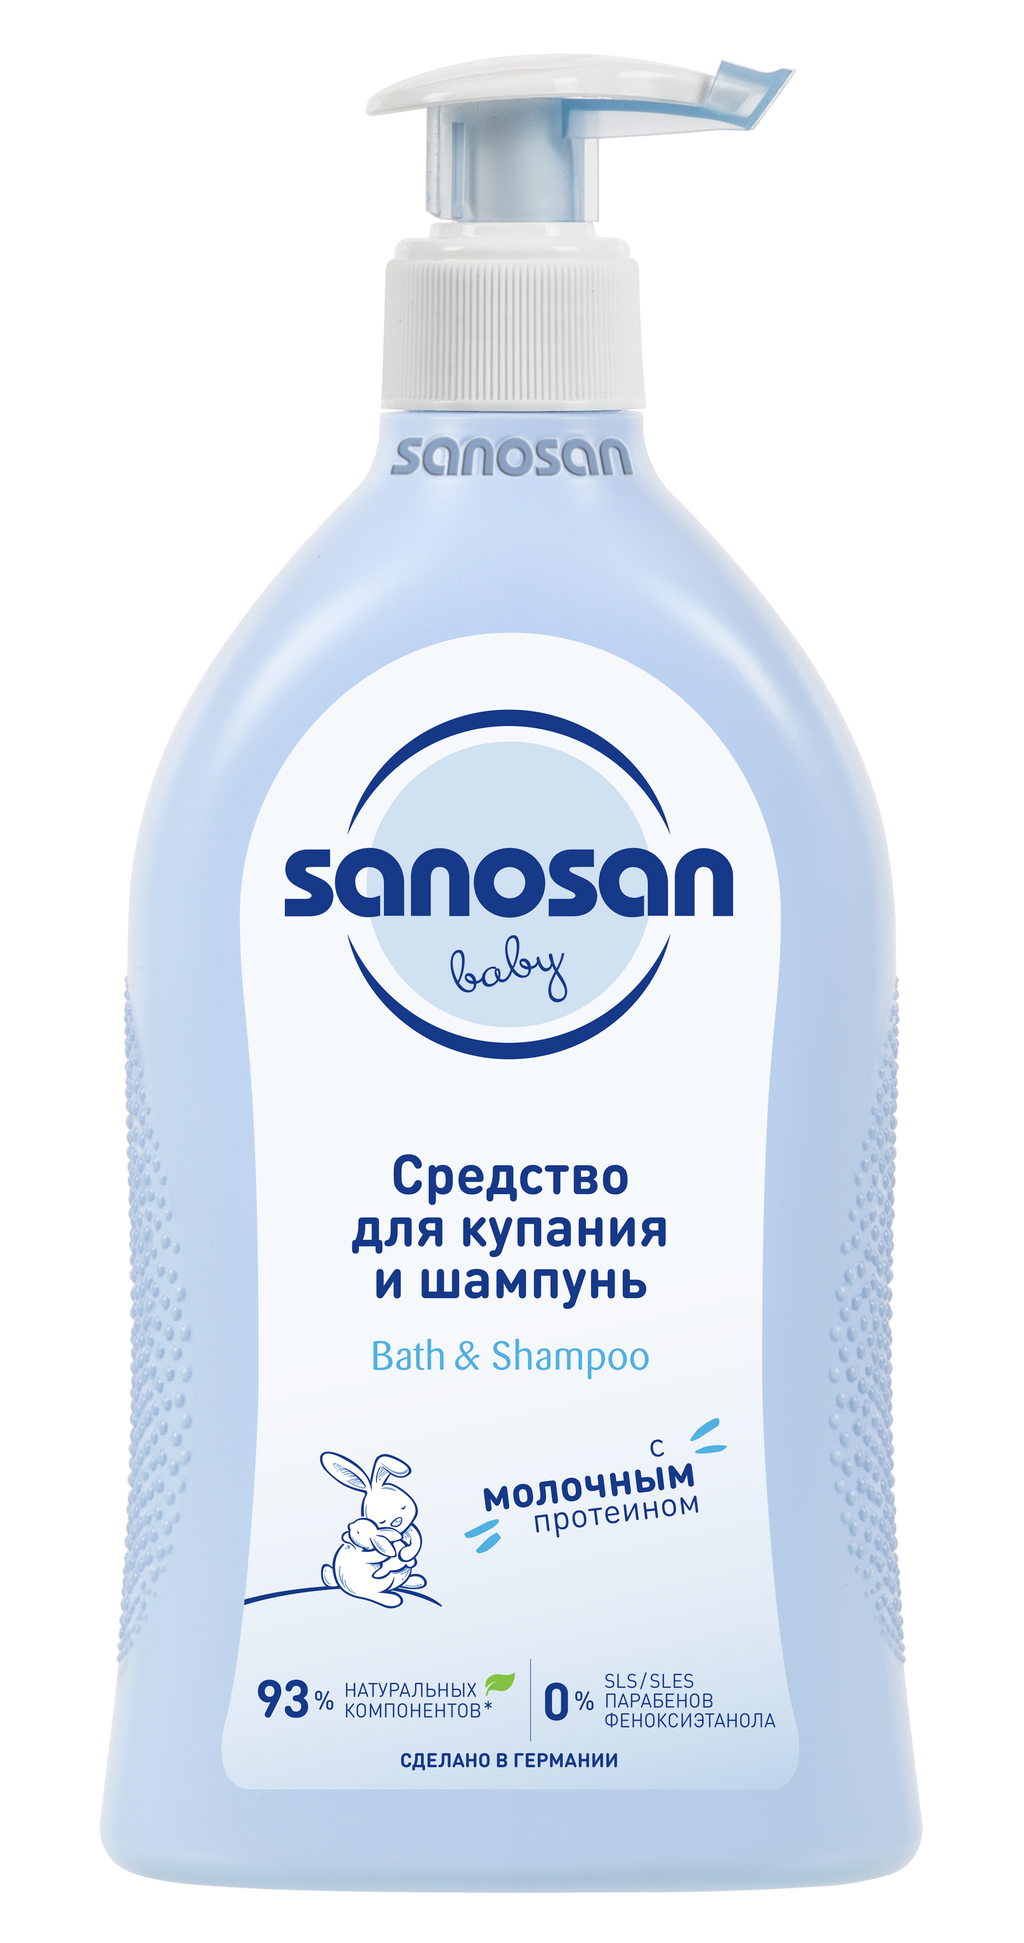 Sanosan Baby Средство для купания и шампунь, 500 мл, 1 шт.